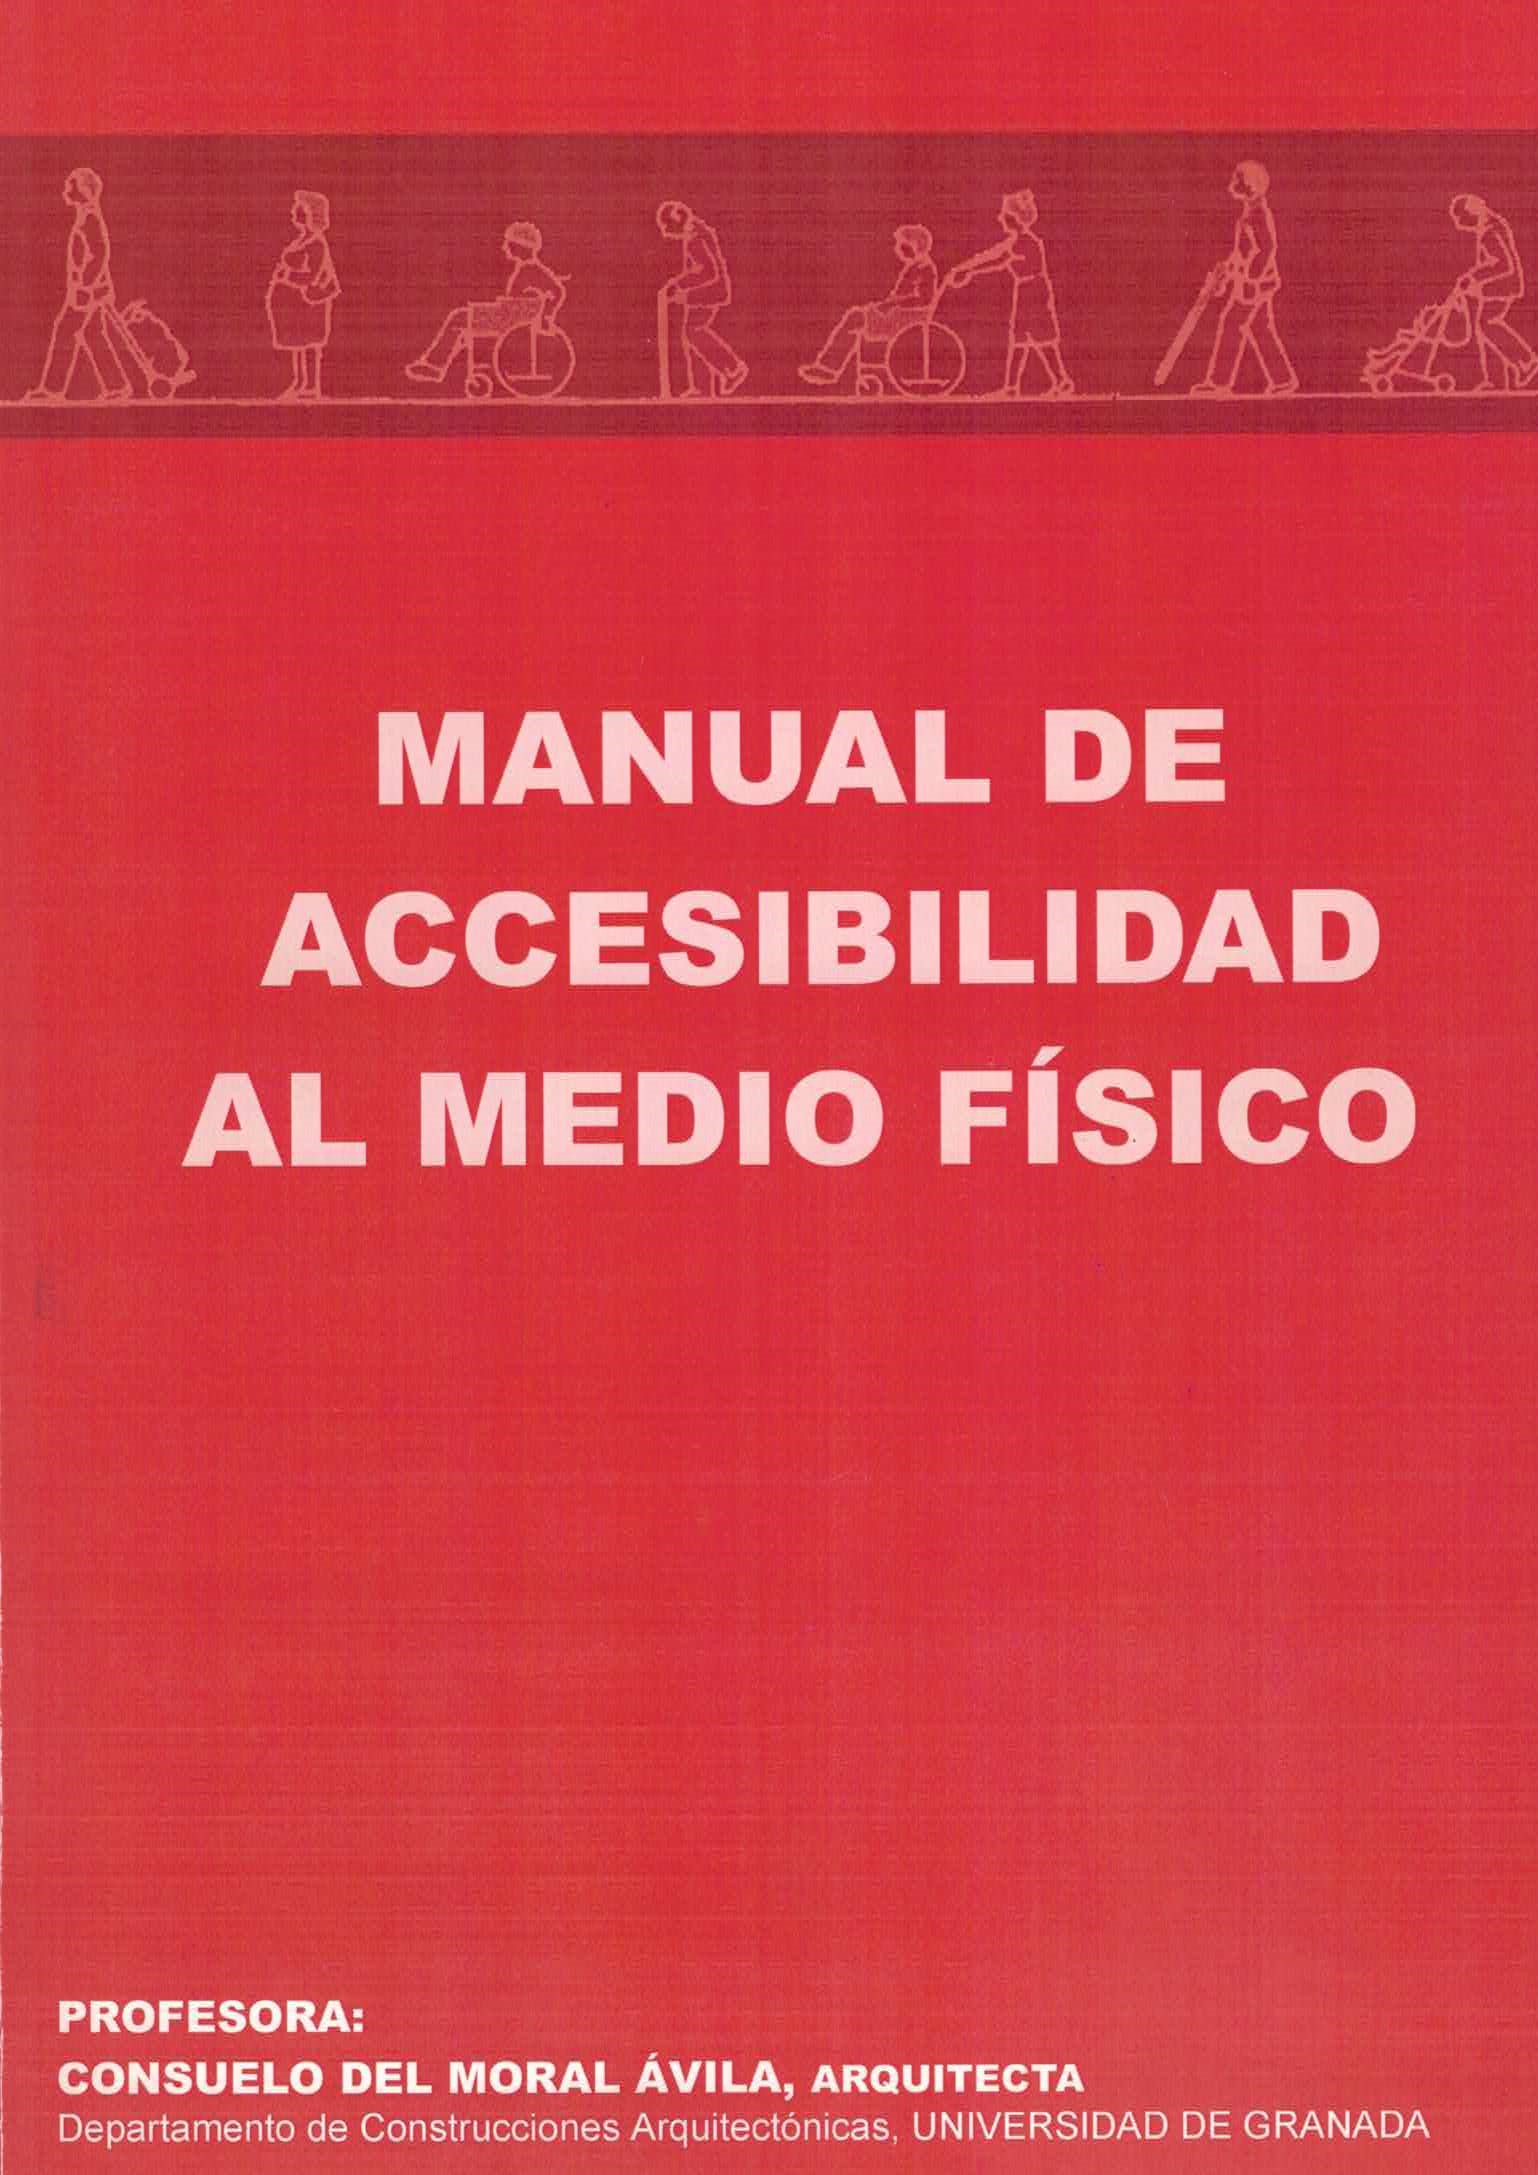 Imagen del Manual de accesibilidad al medio físico